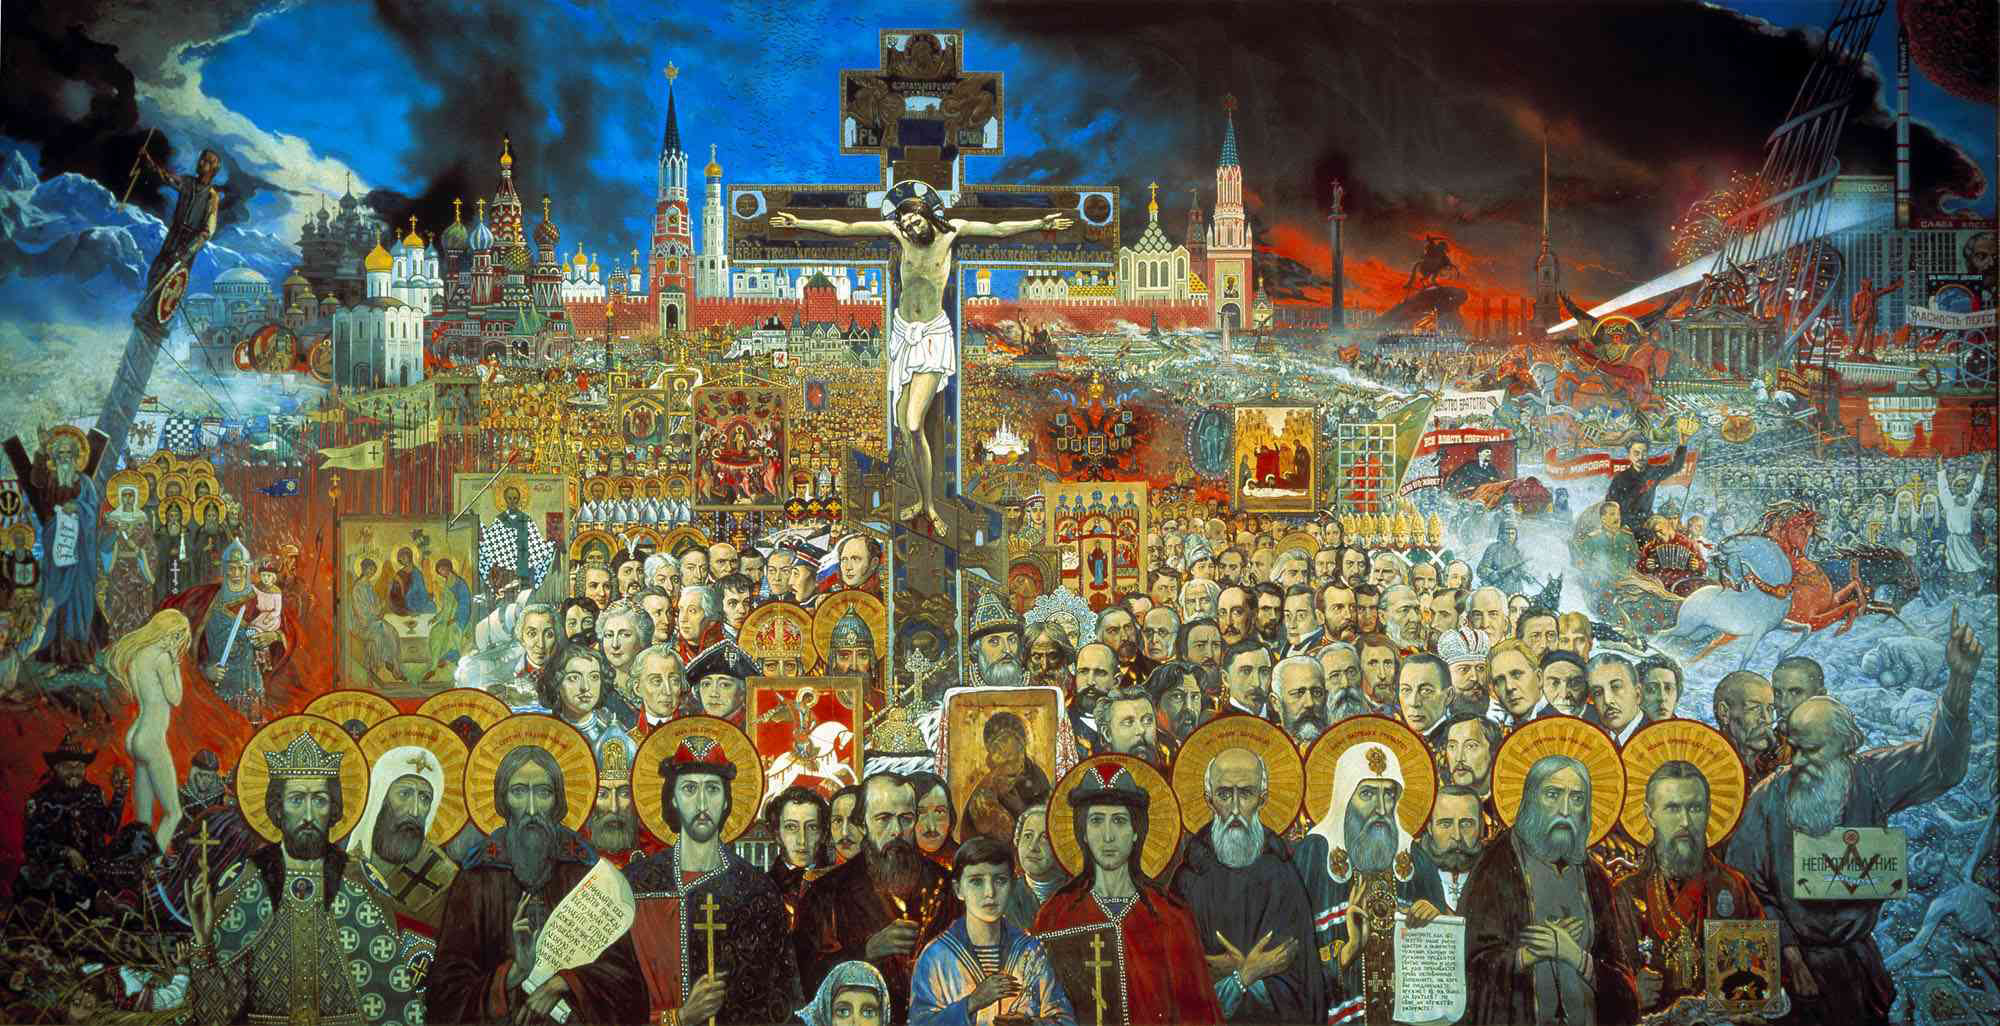 «Вечная Россия» («Сто веков») — картина И. С. Глазунова. Закончена автором в Москве в 1988 году. Первоначально называлась «Сто веков», позже была переименована в «Вечную Россию».